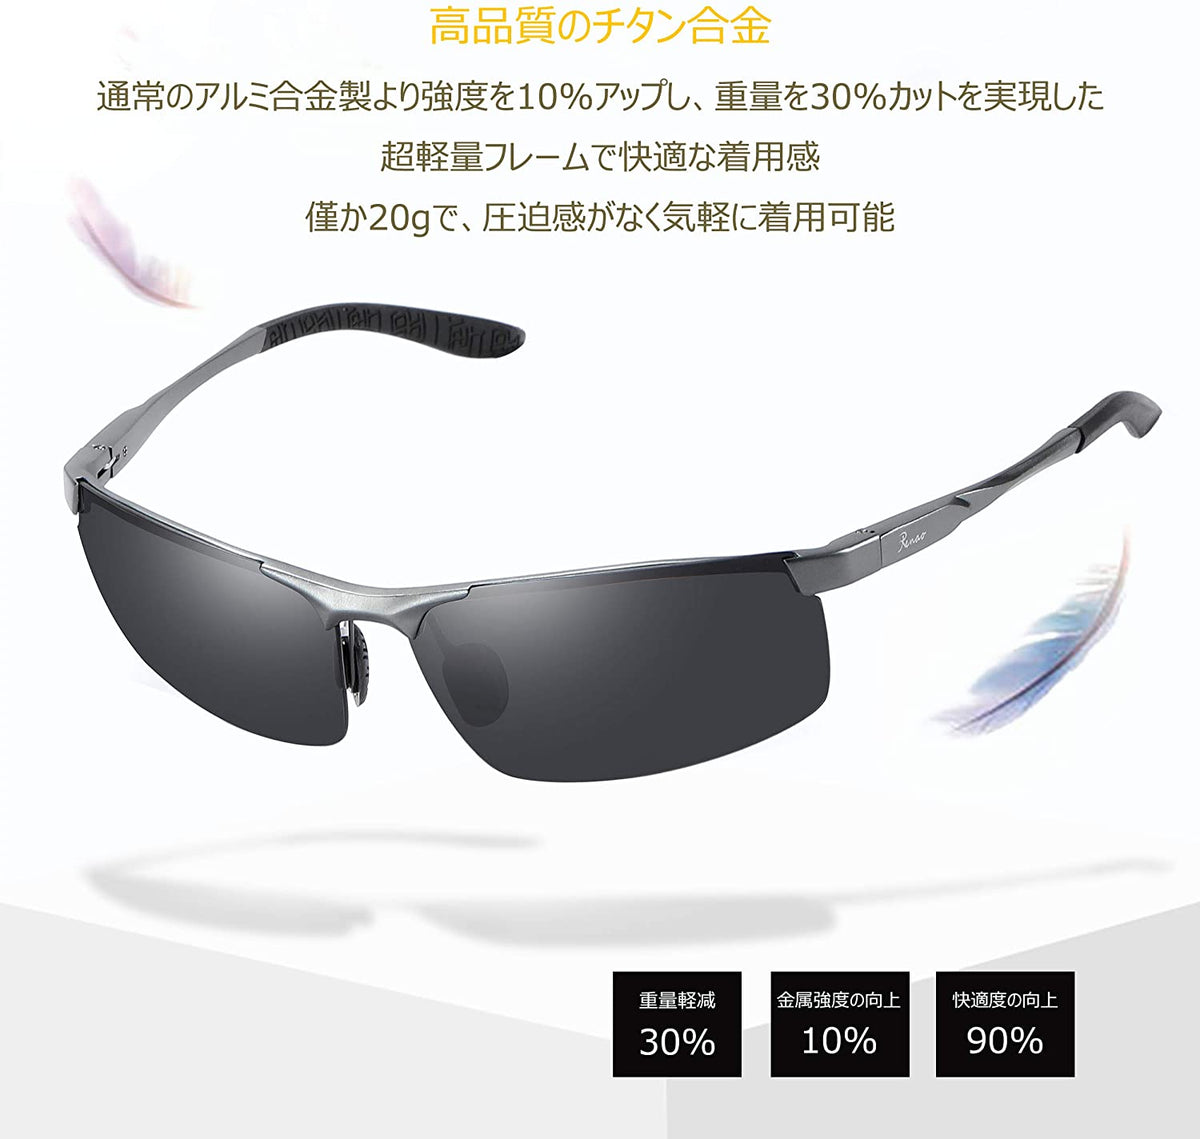 偏光サングラス スポーツサングラス メンズサングラス 超軽量 UV400